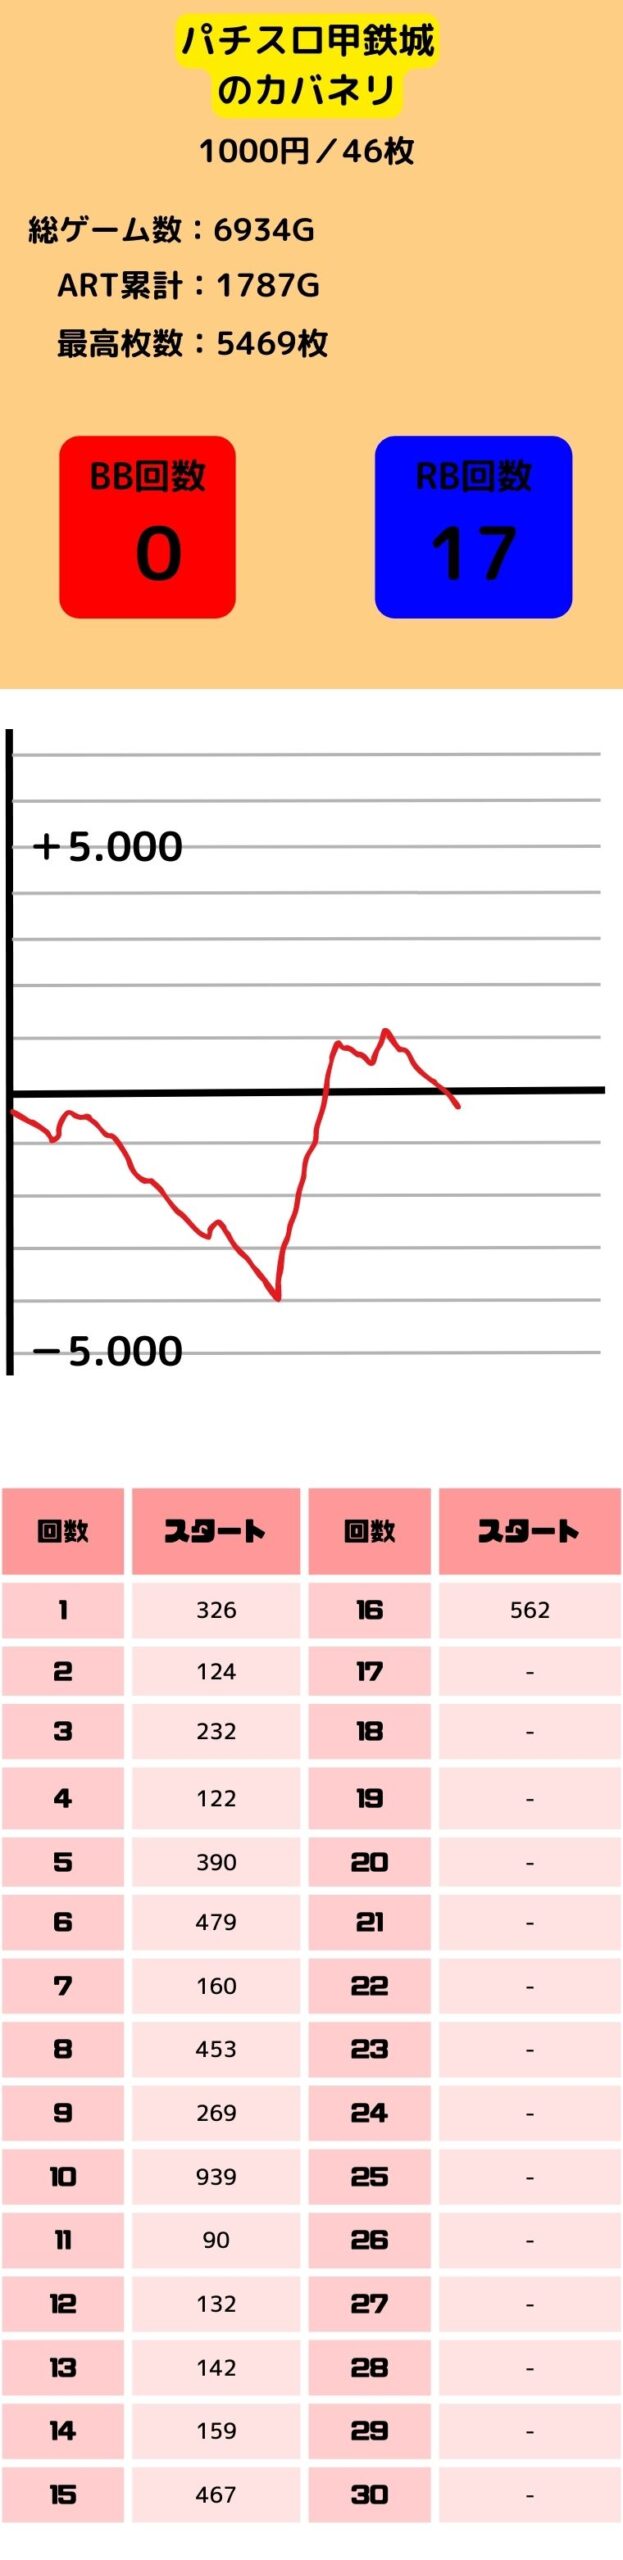 スロット_甲鉄城のカバネリ_低設定1.2.3のグラフと初当たり挙動